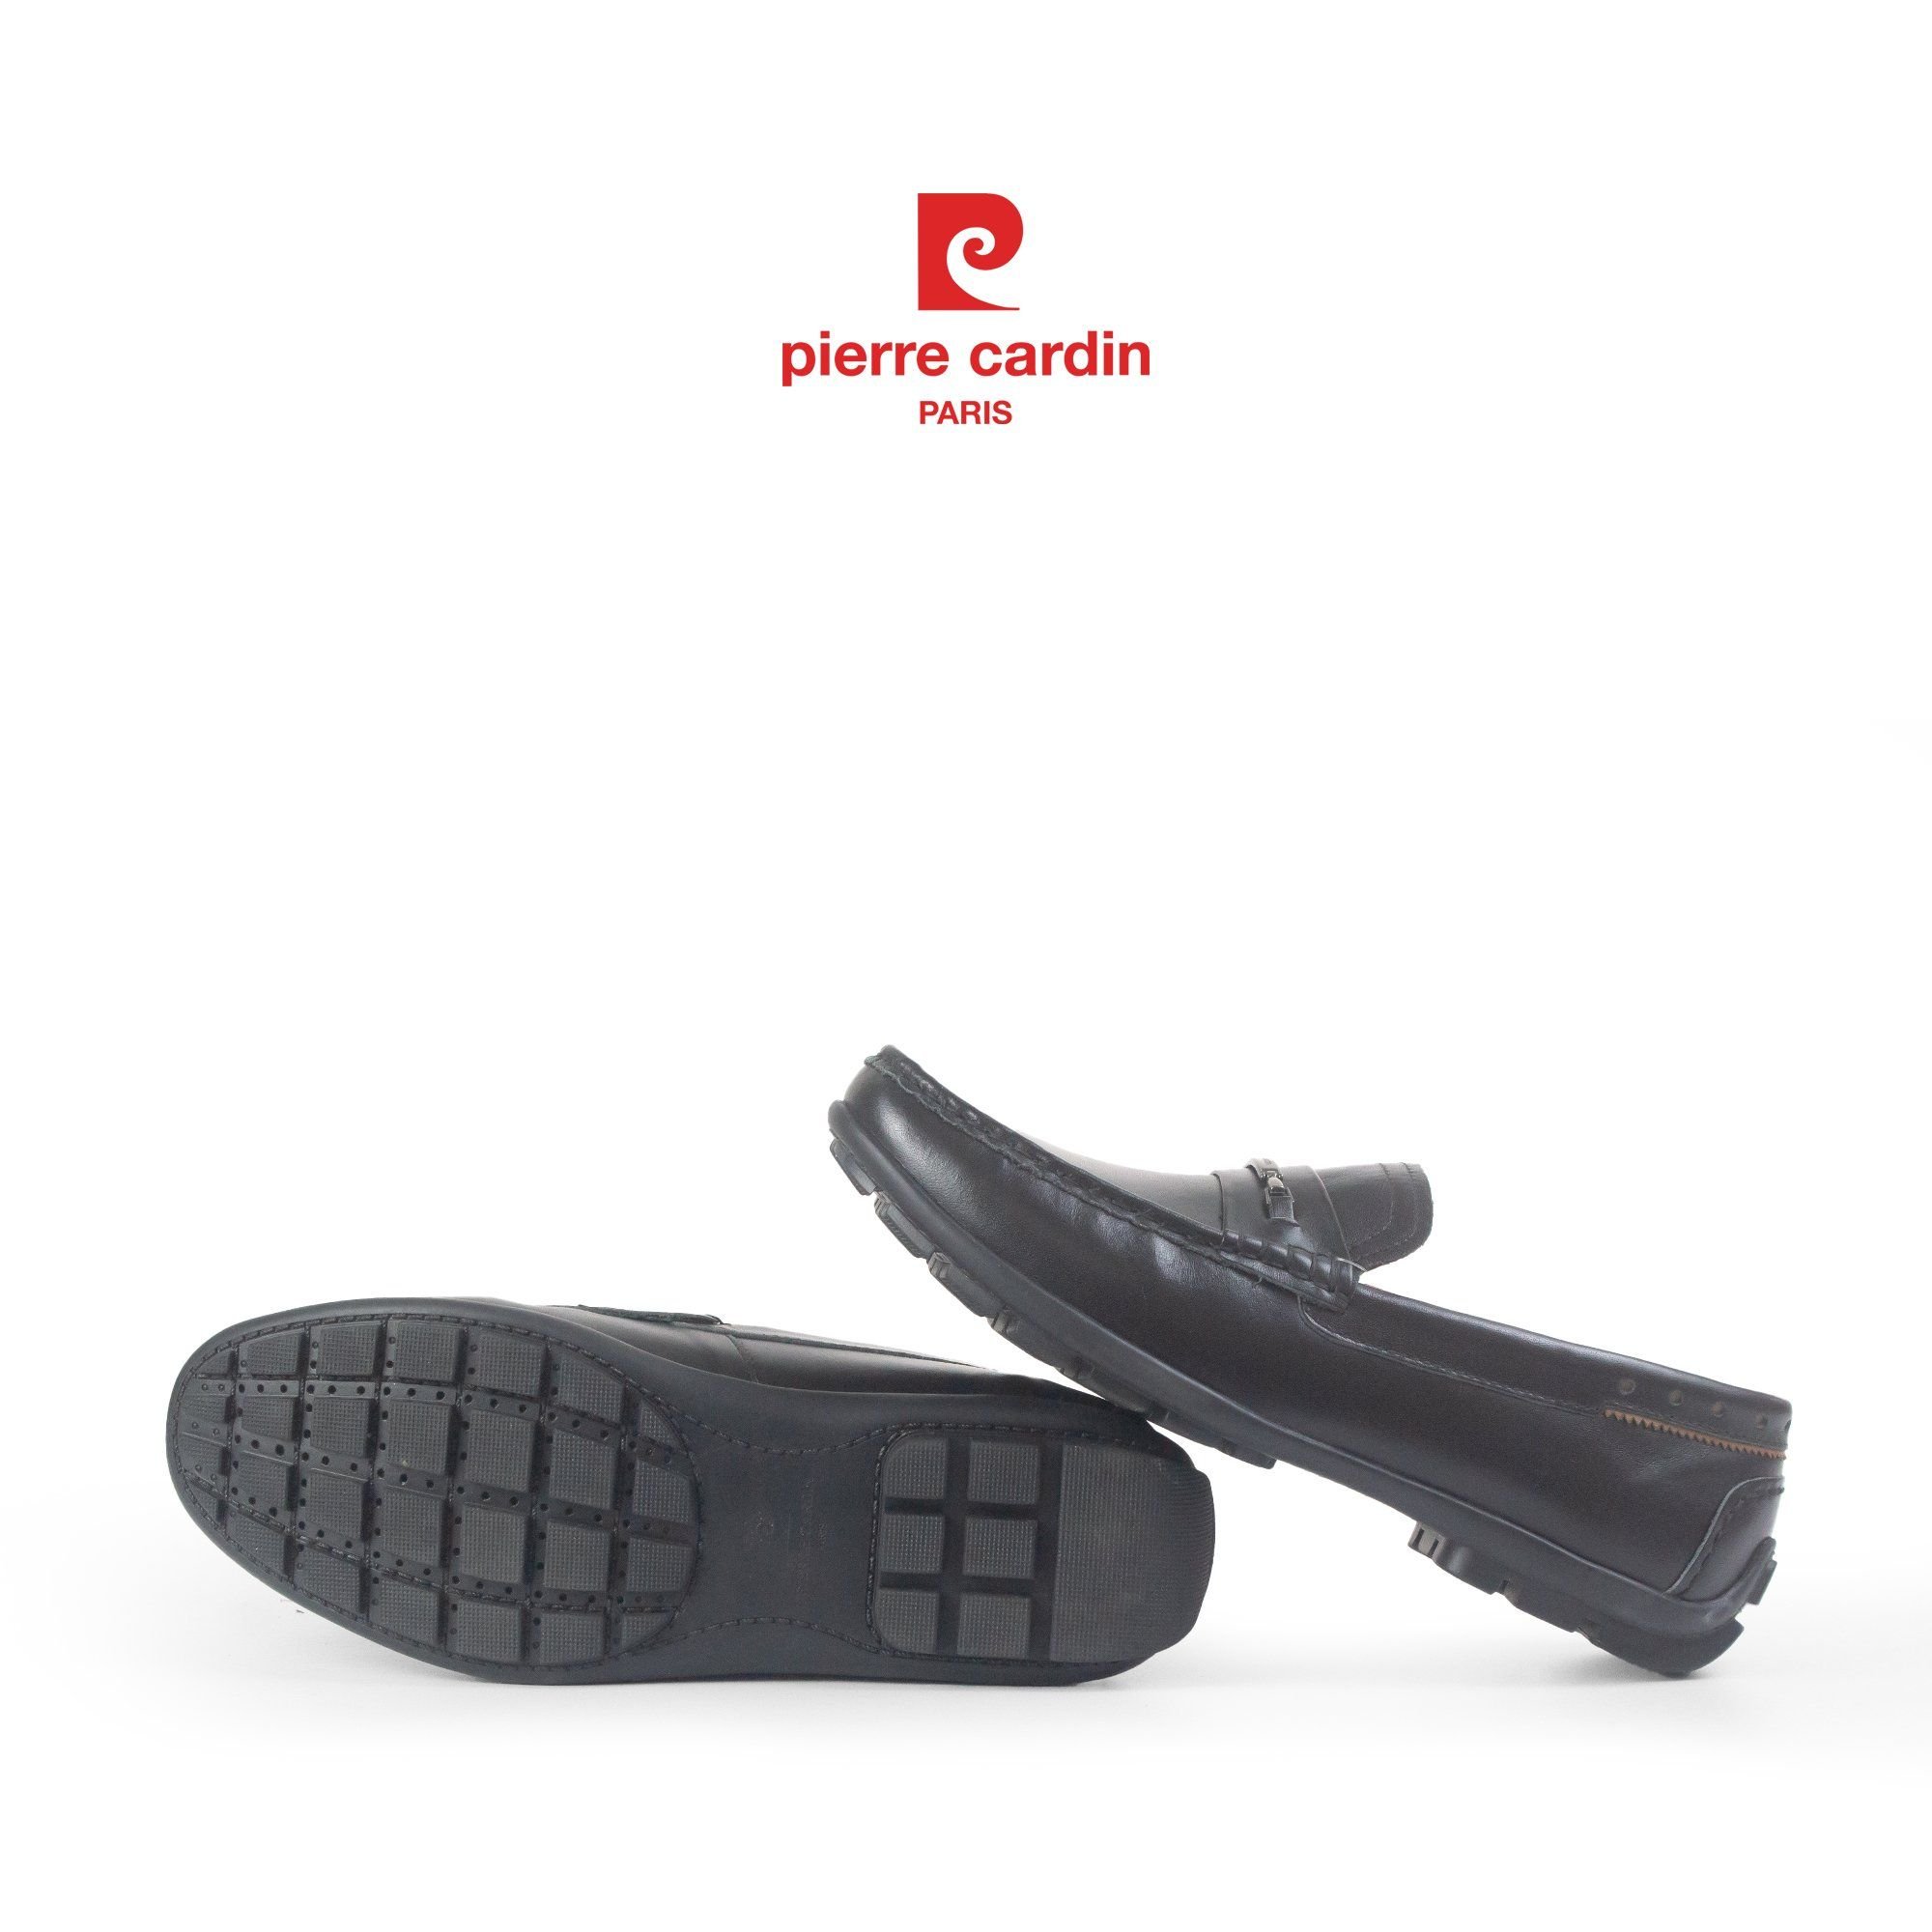 Hình 3 - Giày Horsebit Driving Pierre Cardin - PCMFWLH 728: Không Chỉ Được Sản Xuất Ra Để Đi